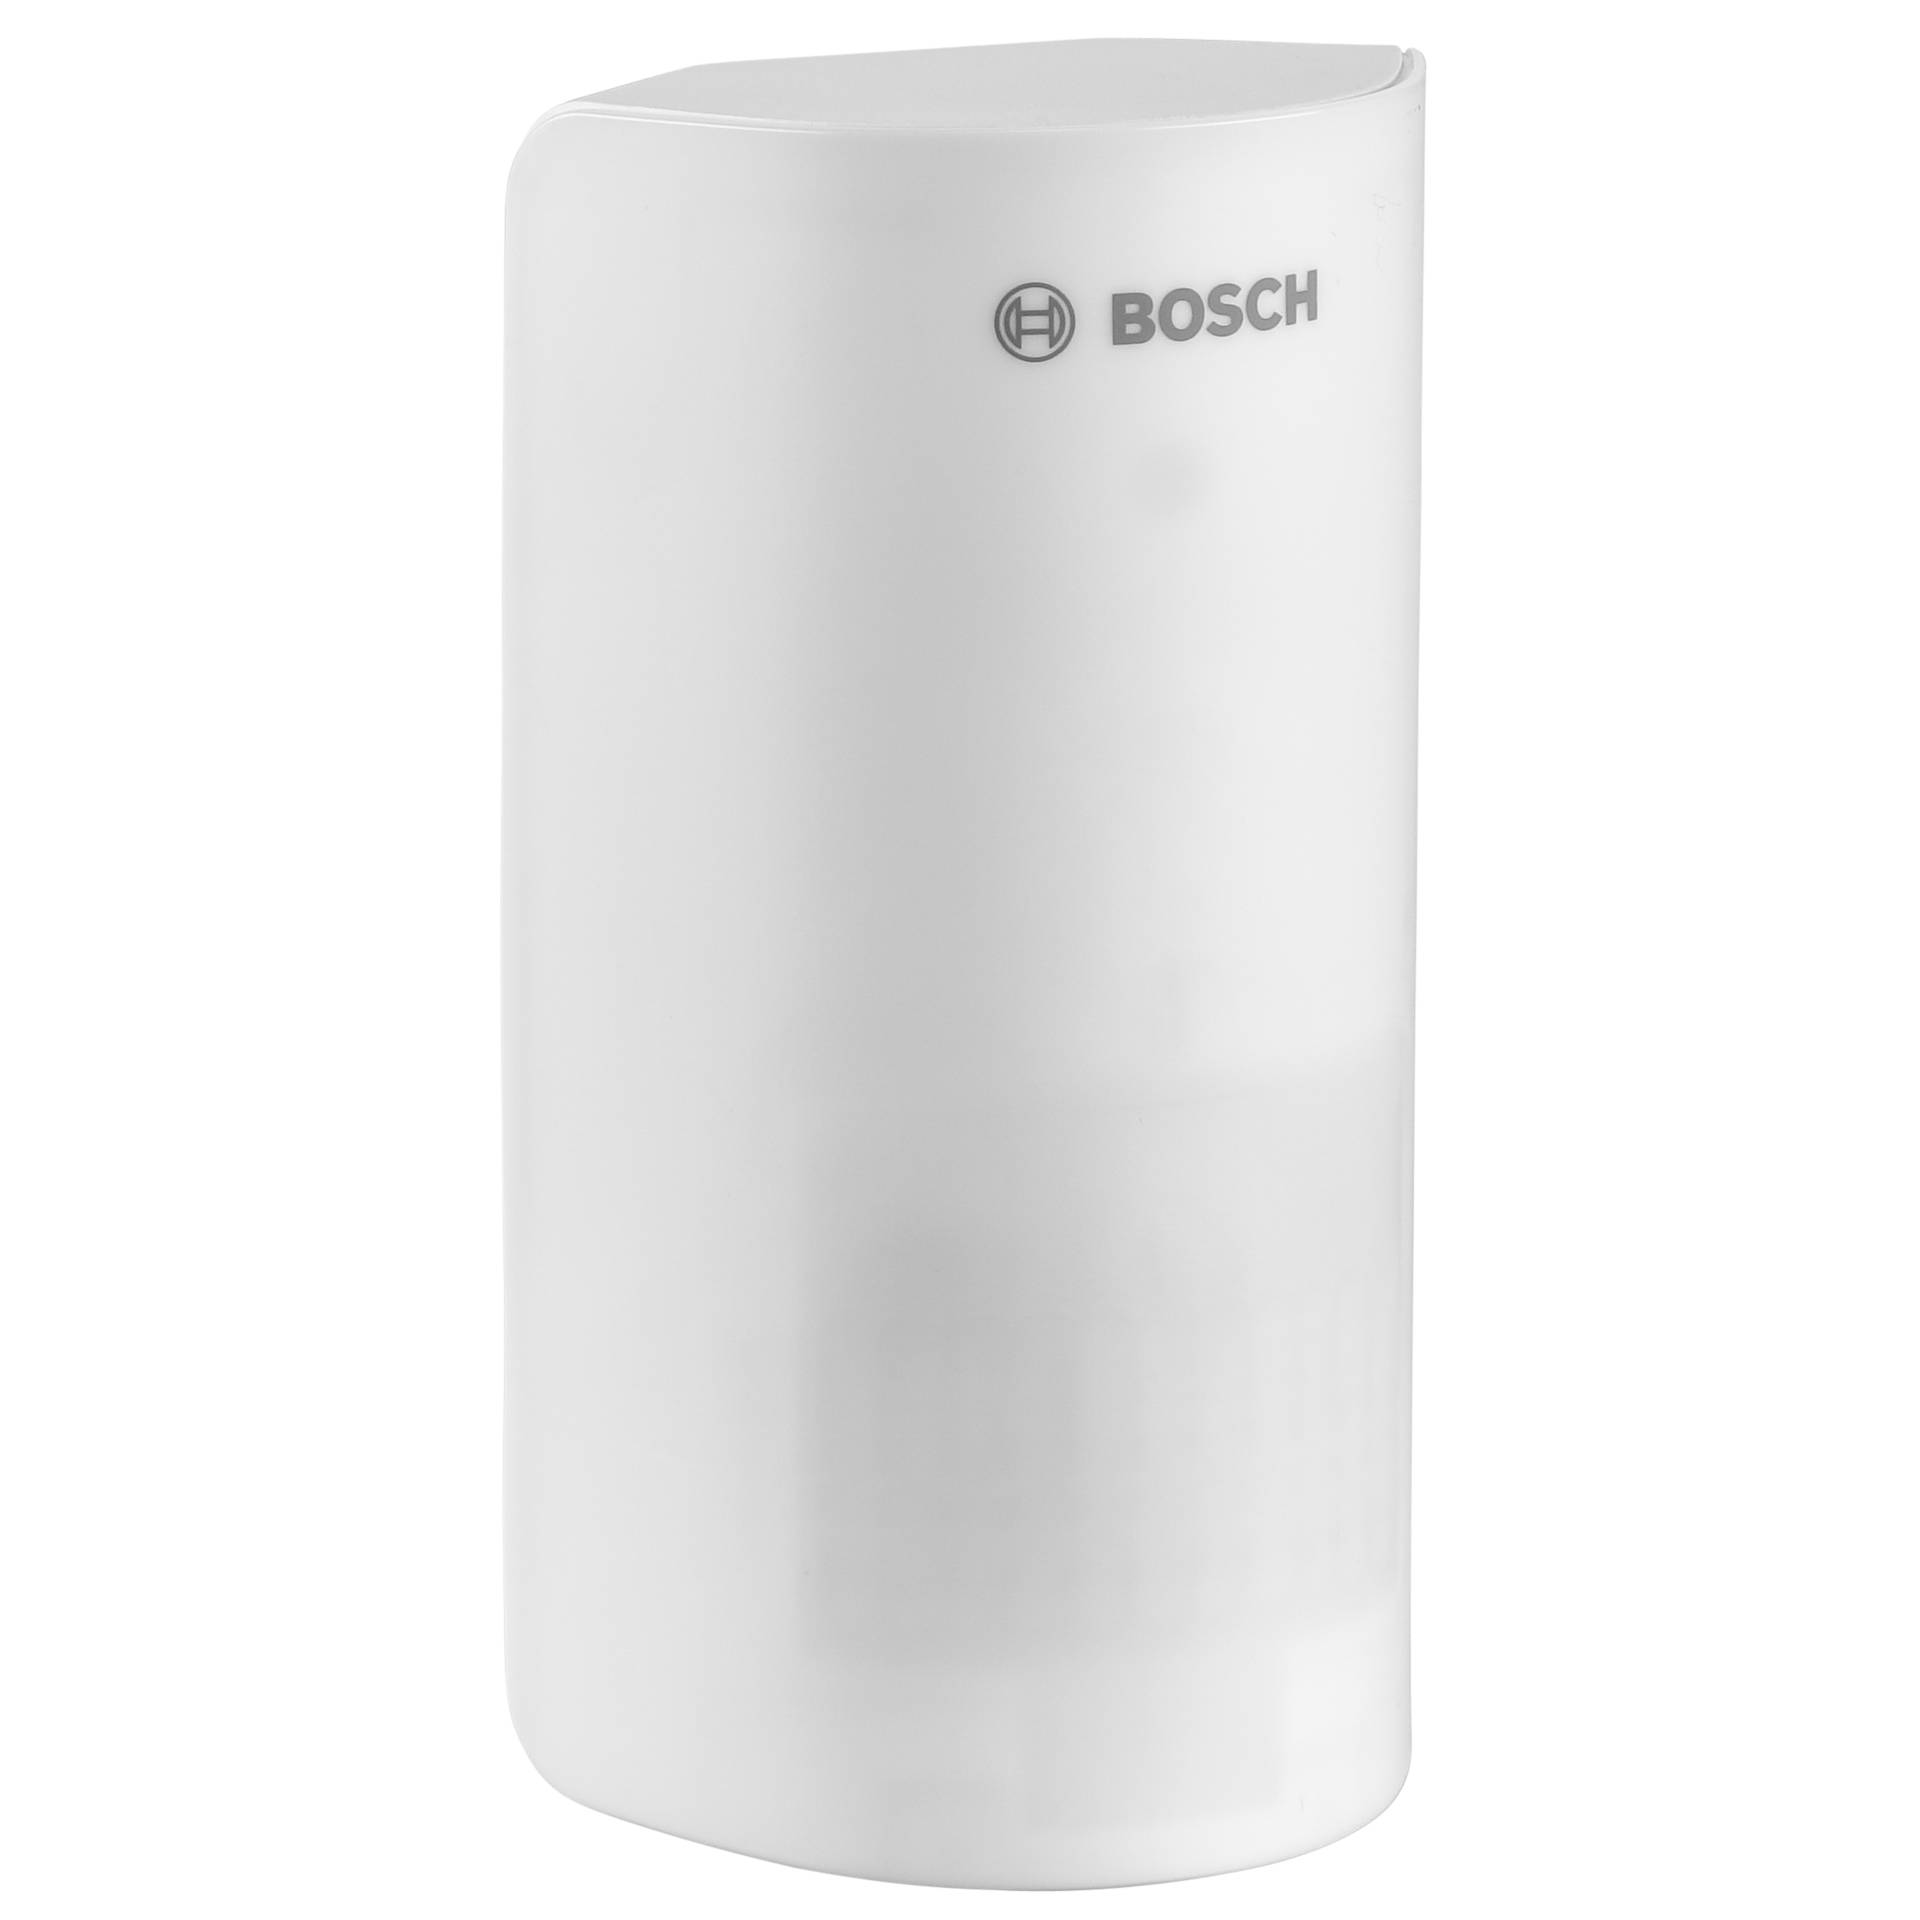 Bosch 8-750-000-018 Infrarot- und Mikrowellensensor Weiß